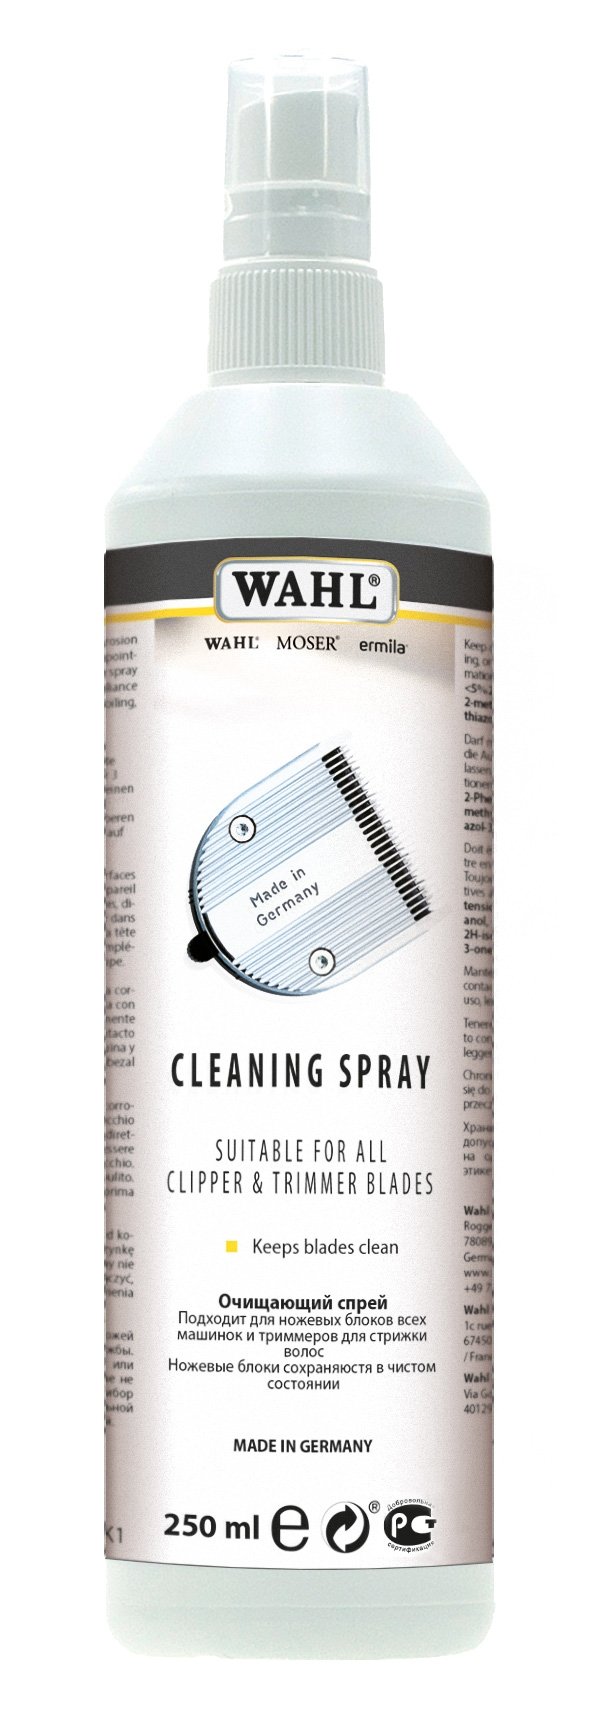 Профессиональные машинки для стрижки волос:  WAHL -  Очищающий спрей Wahl